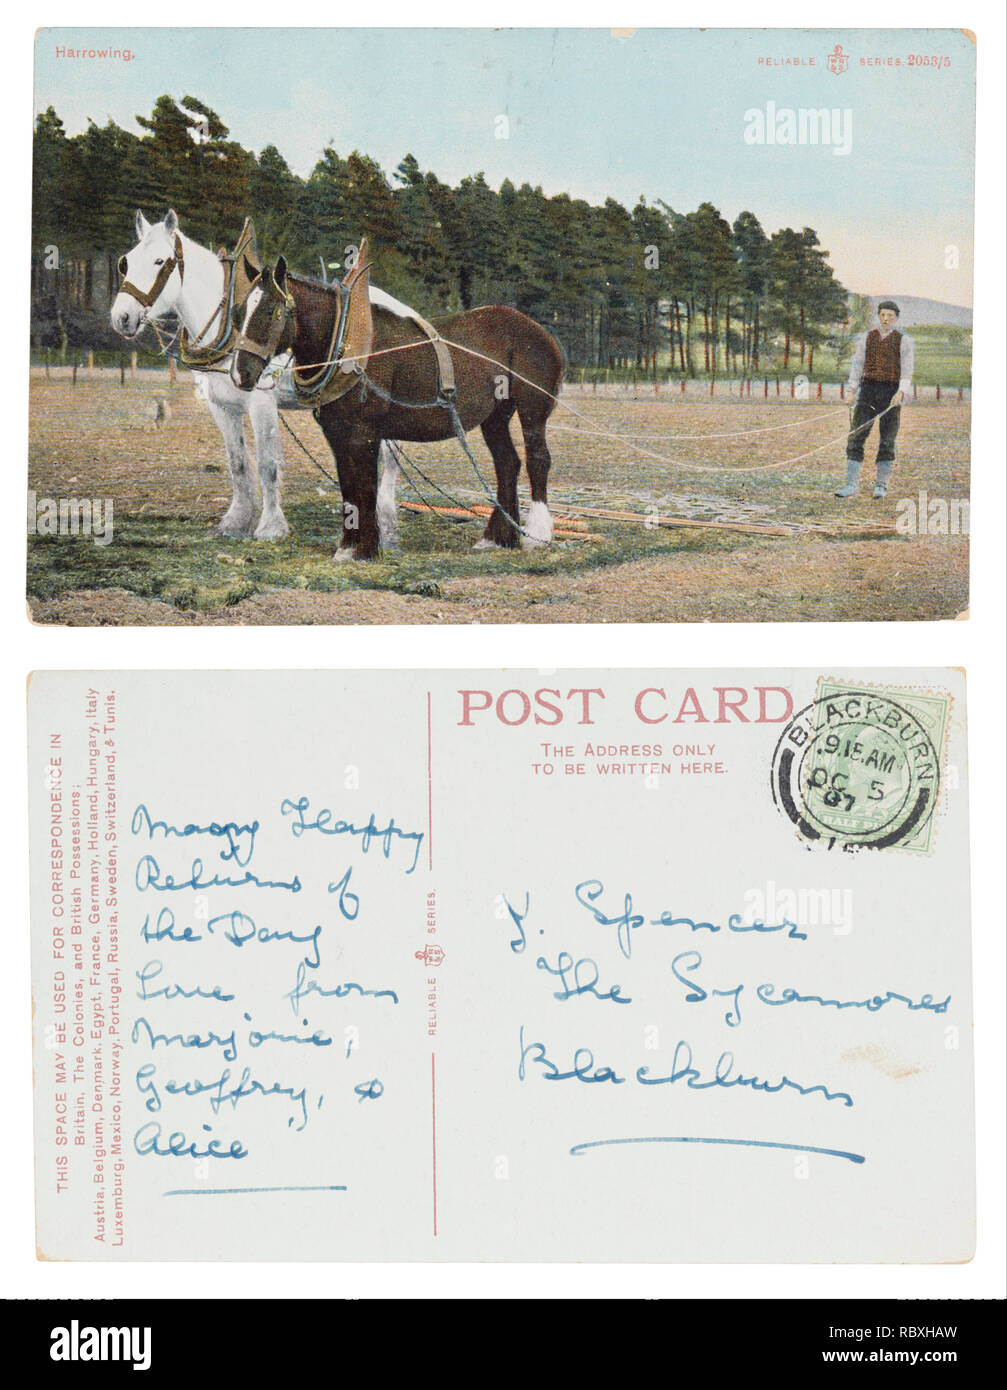 Cartolina di farm boy straziante inviato da Blackburn a J Spencer, sicomori che intendono molti felici ritorni del giorno Foto Stock